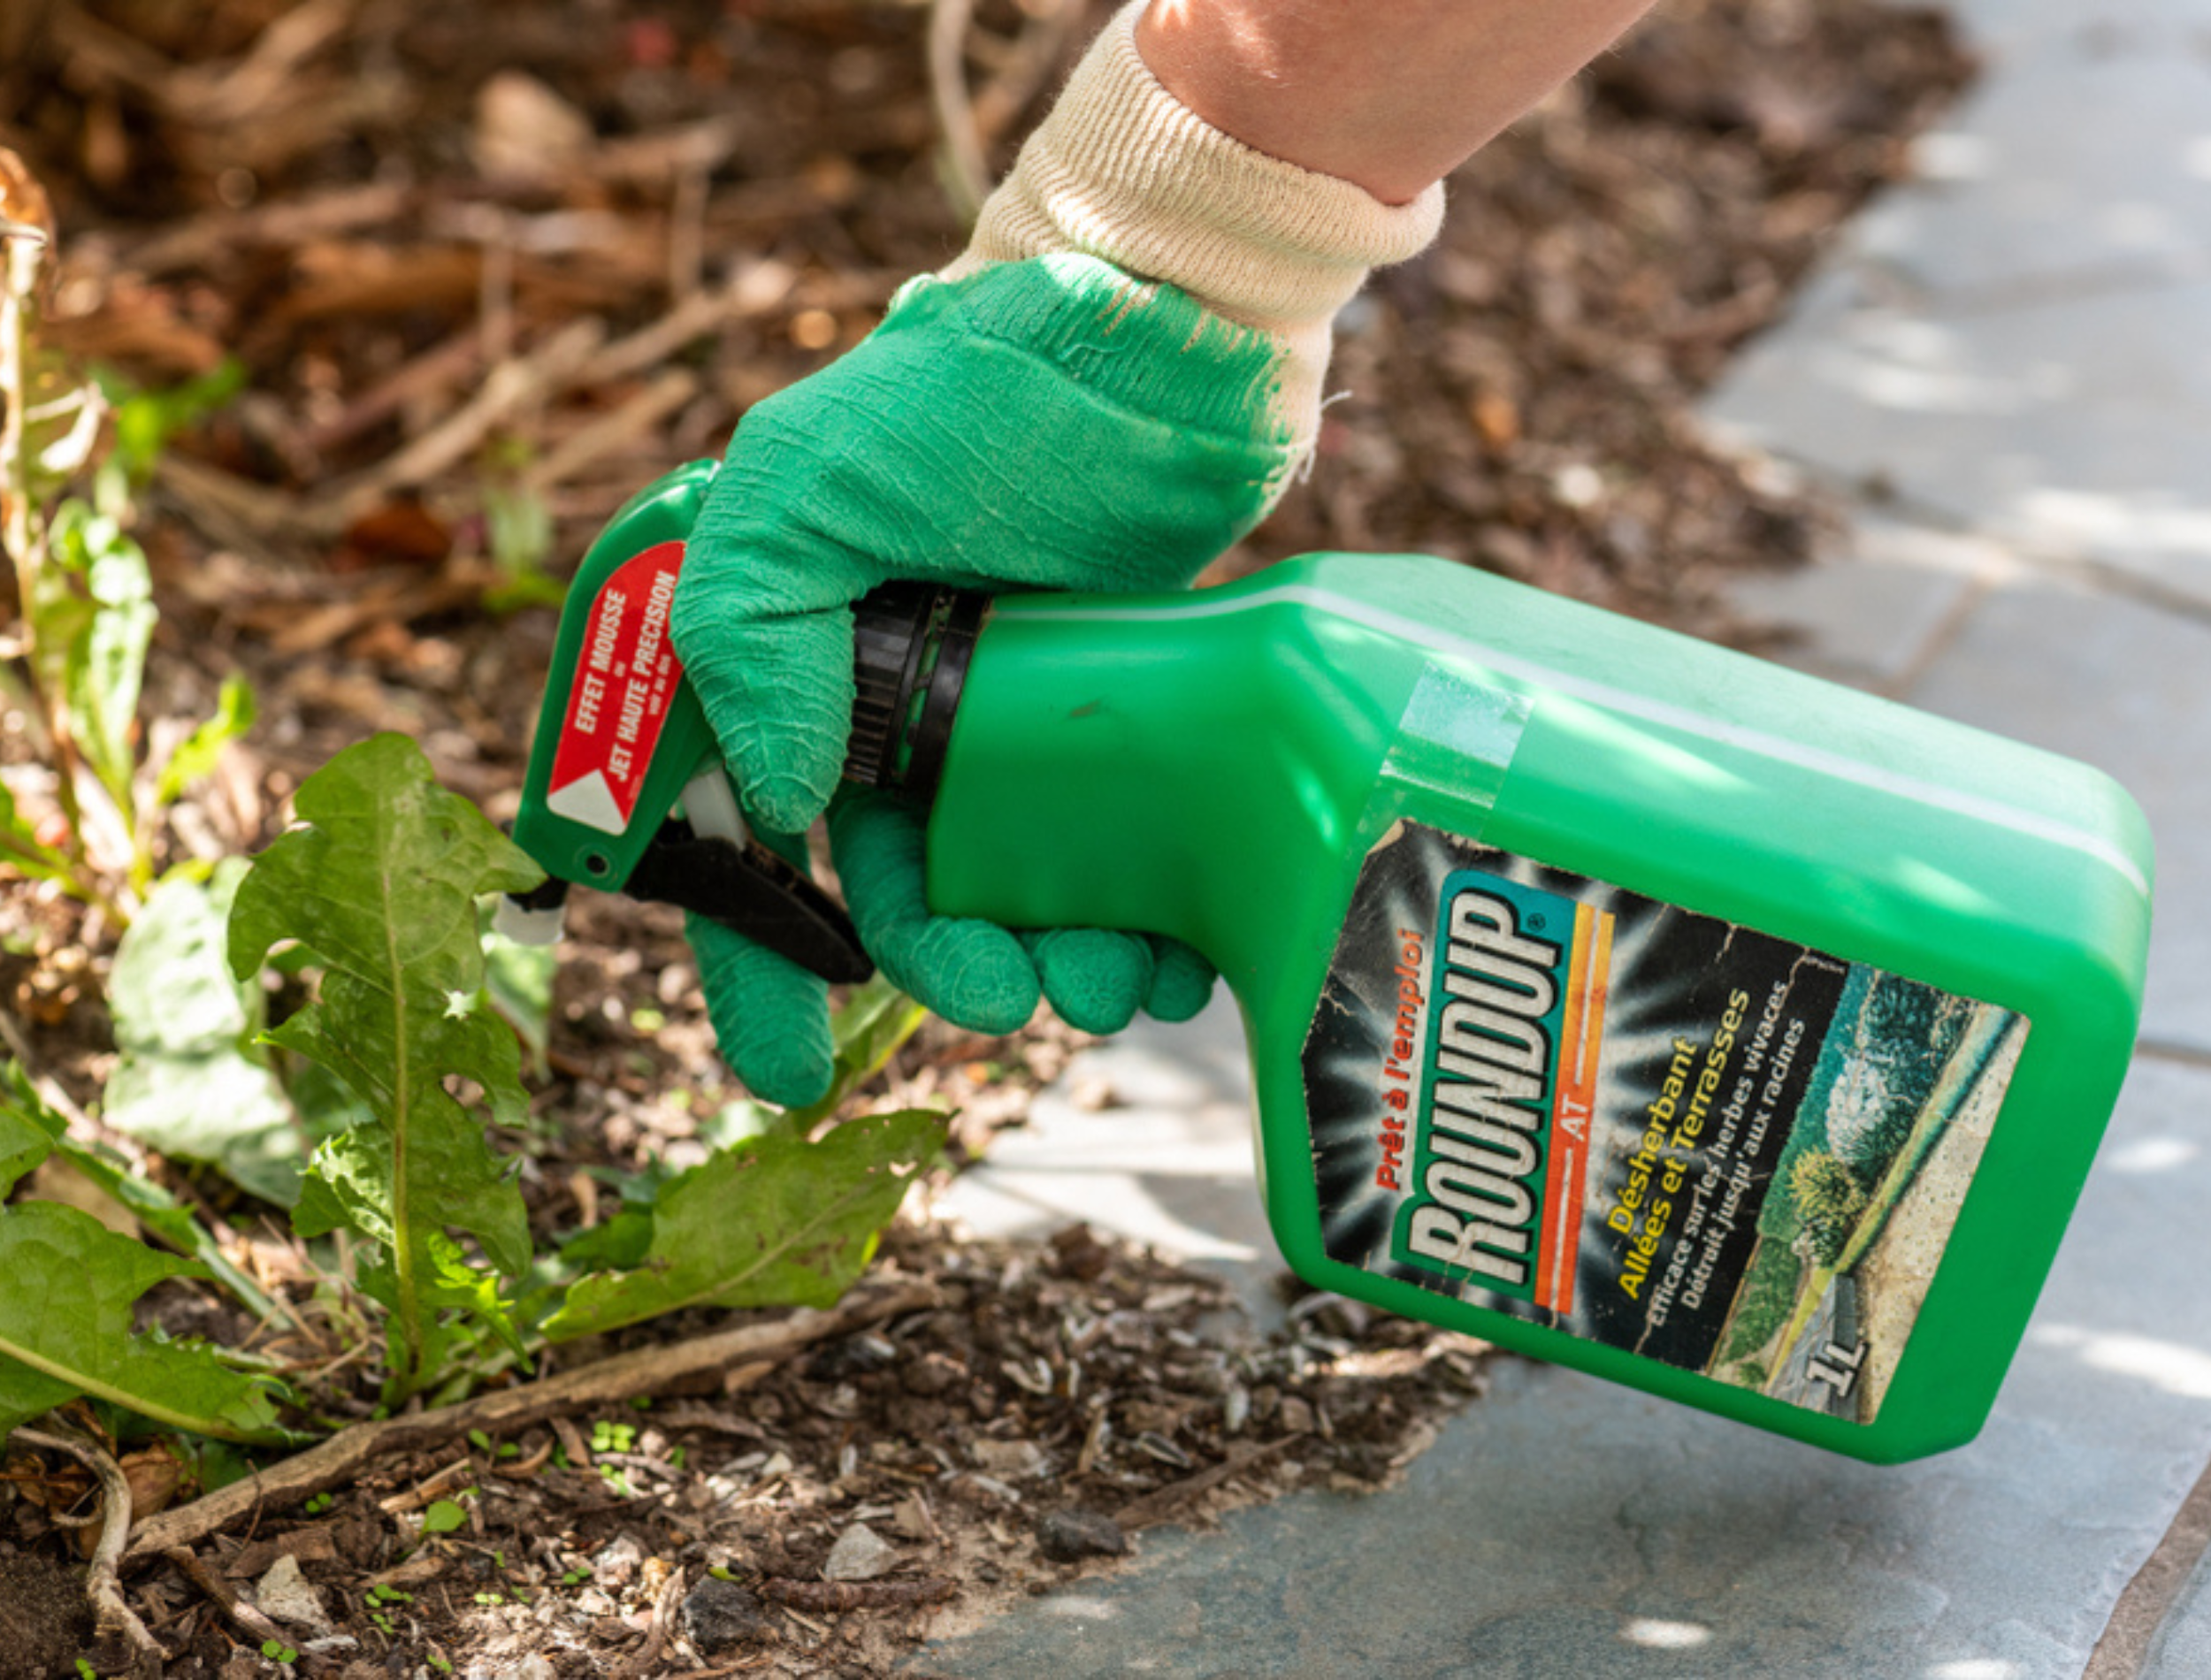 Gardener using Roundup herbicide